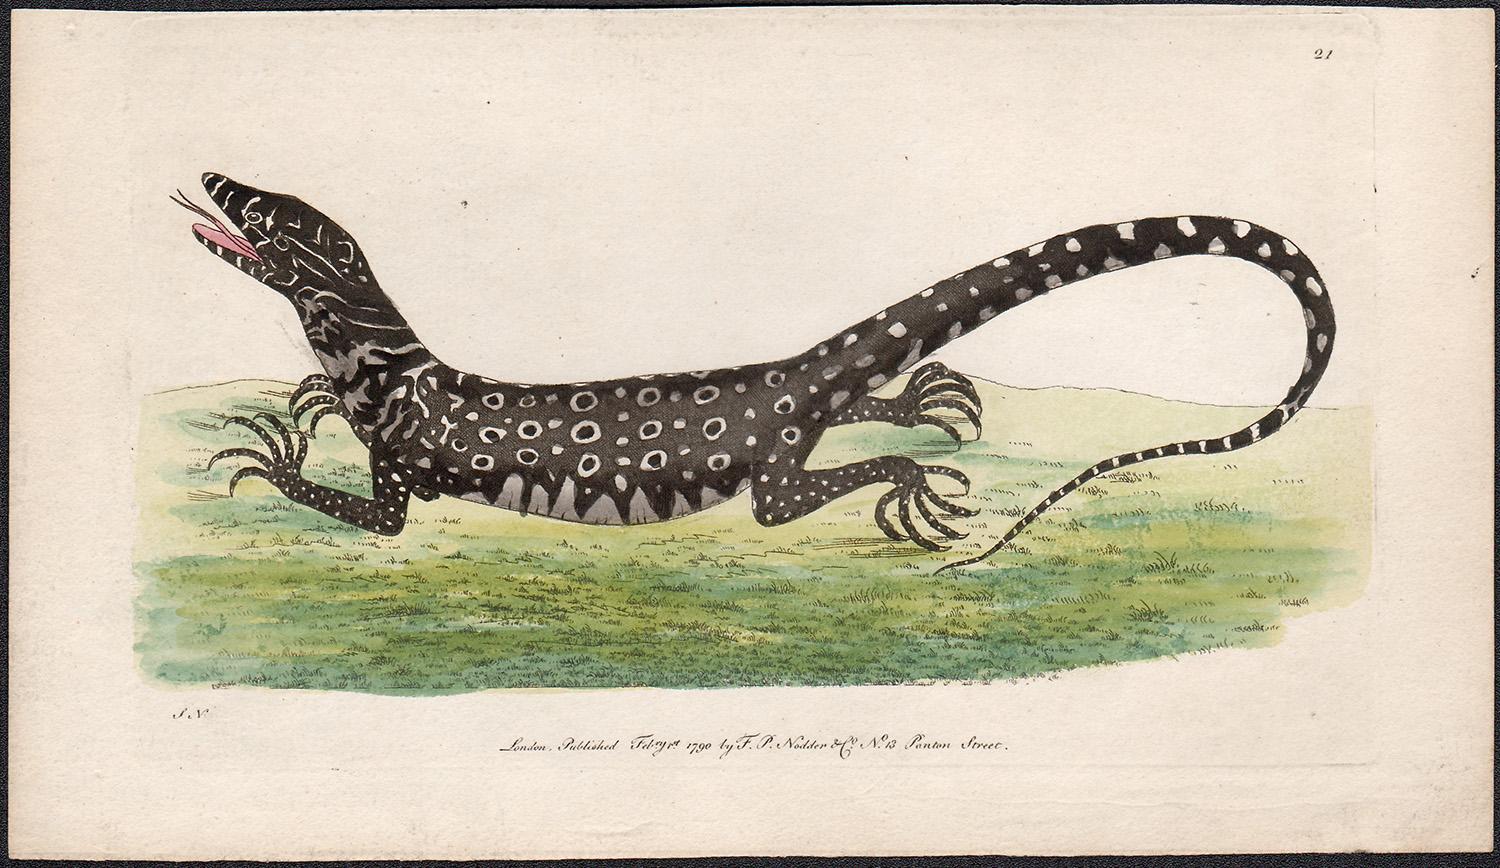 The Monitory Lizard, Australien, Gravur mit Original-Handkolorierung, 1790 – Print von Frederick Polydore Nodder